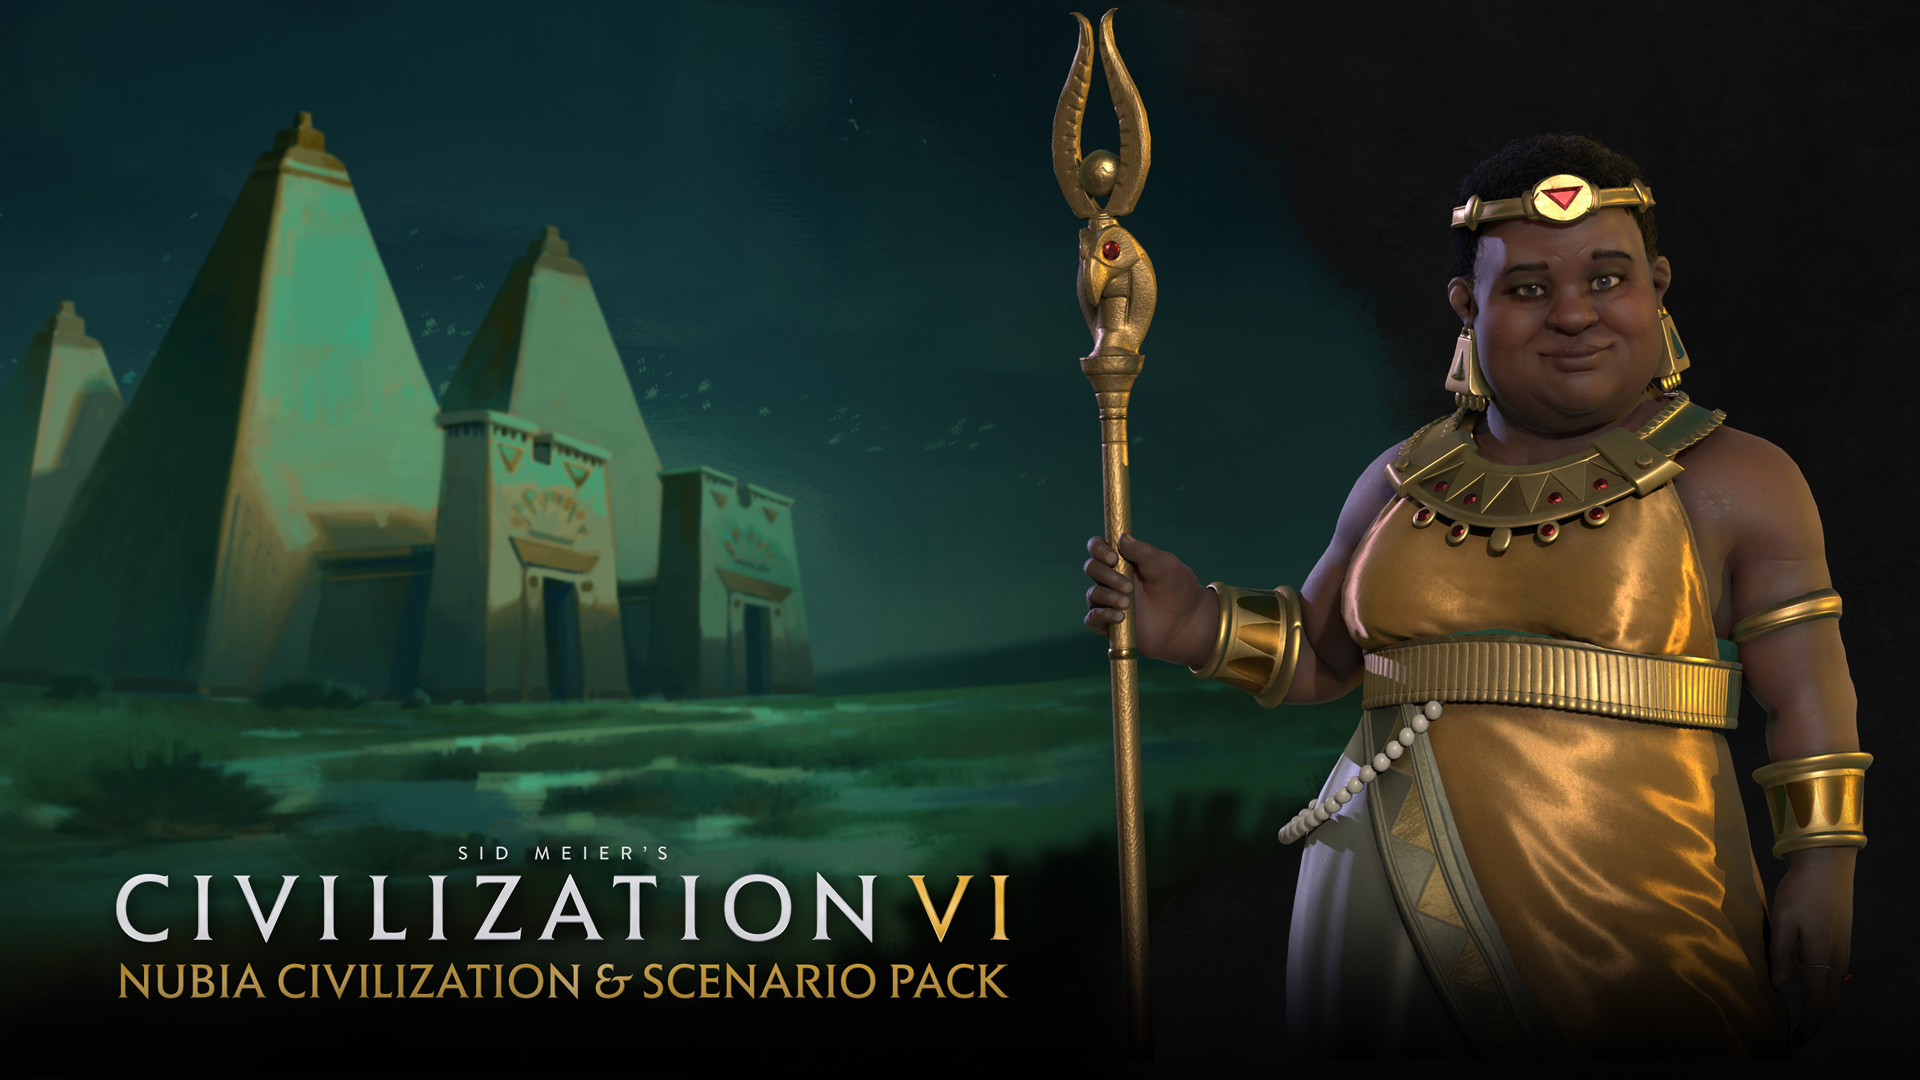 Sid Meier’s Civilization VI - Nubia Civilization & Scenario Pack